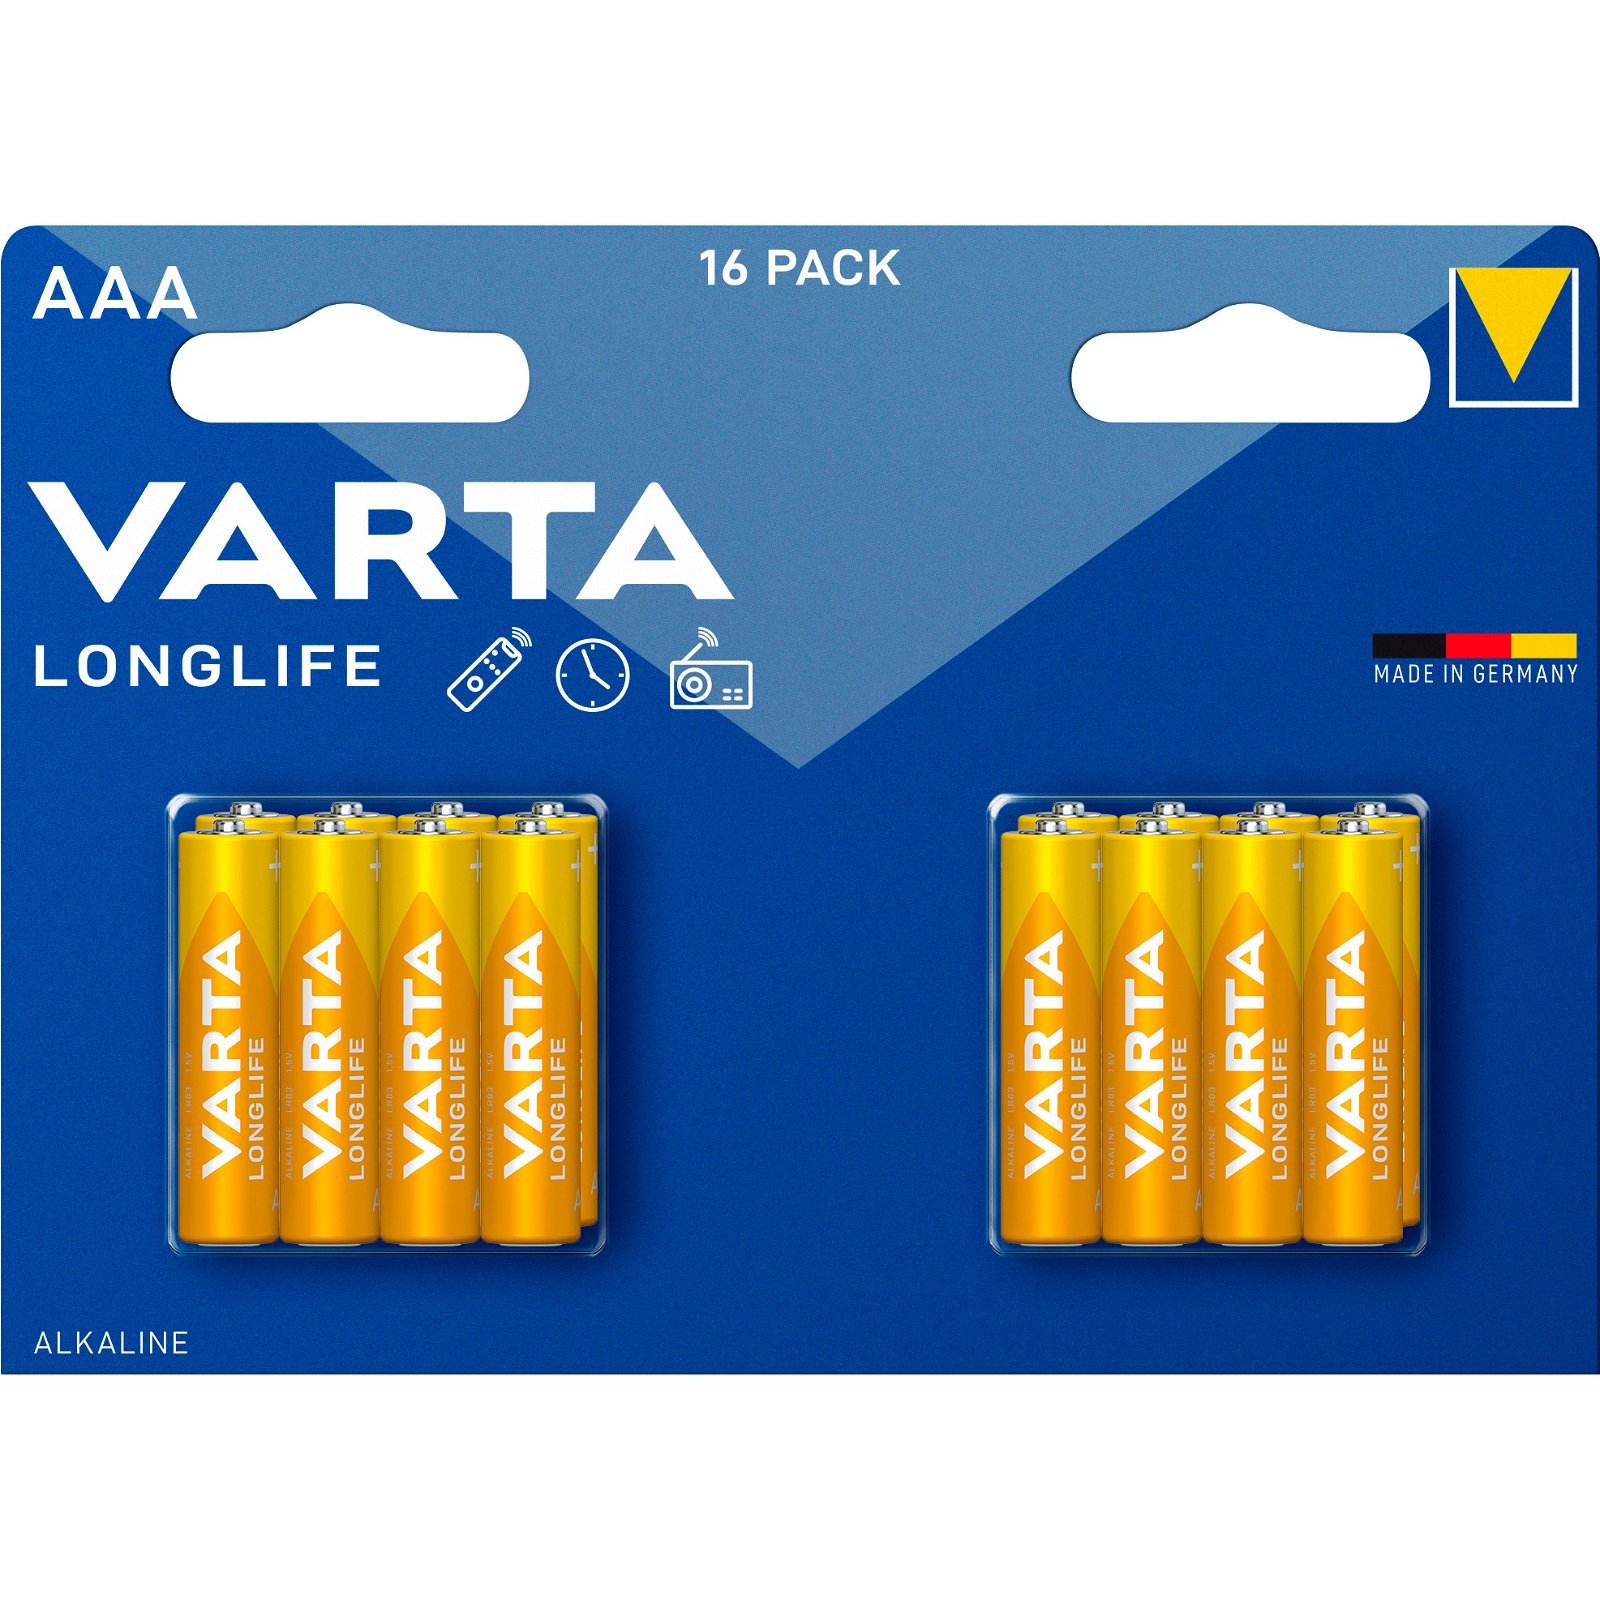 VARTA LongLife batteri AAA/LR03 1.5 v 16 stk